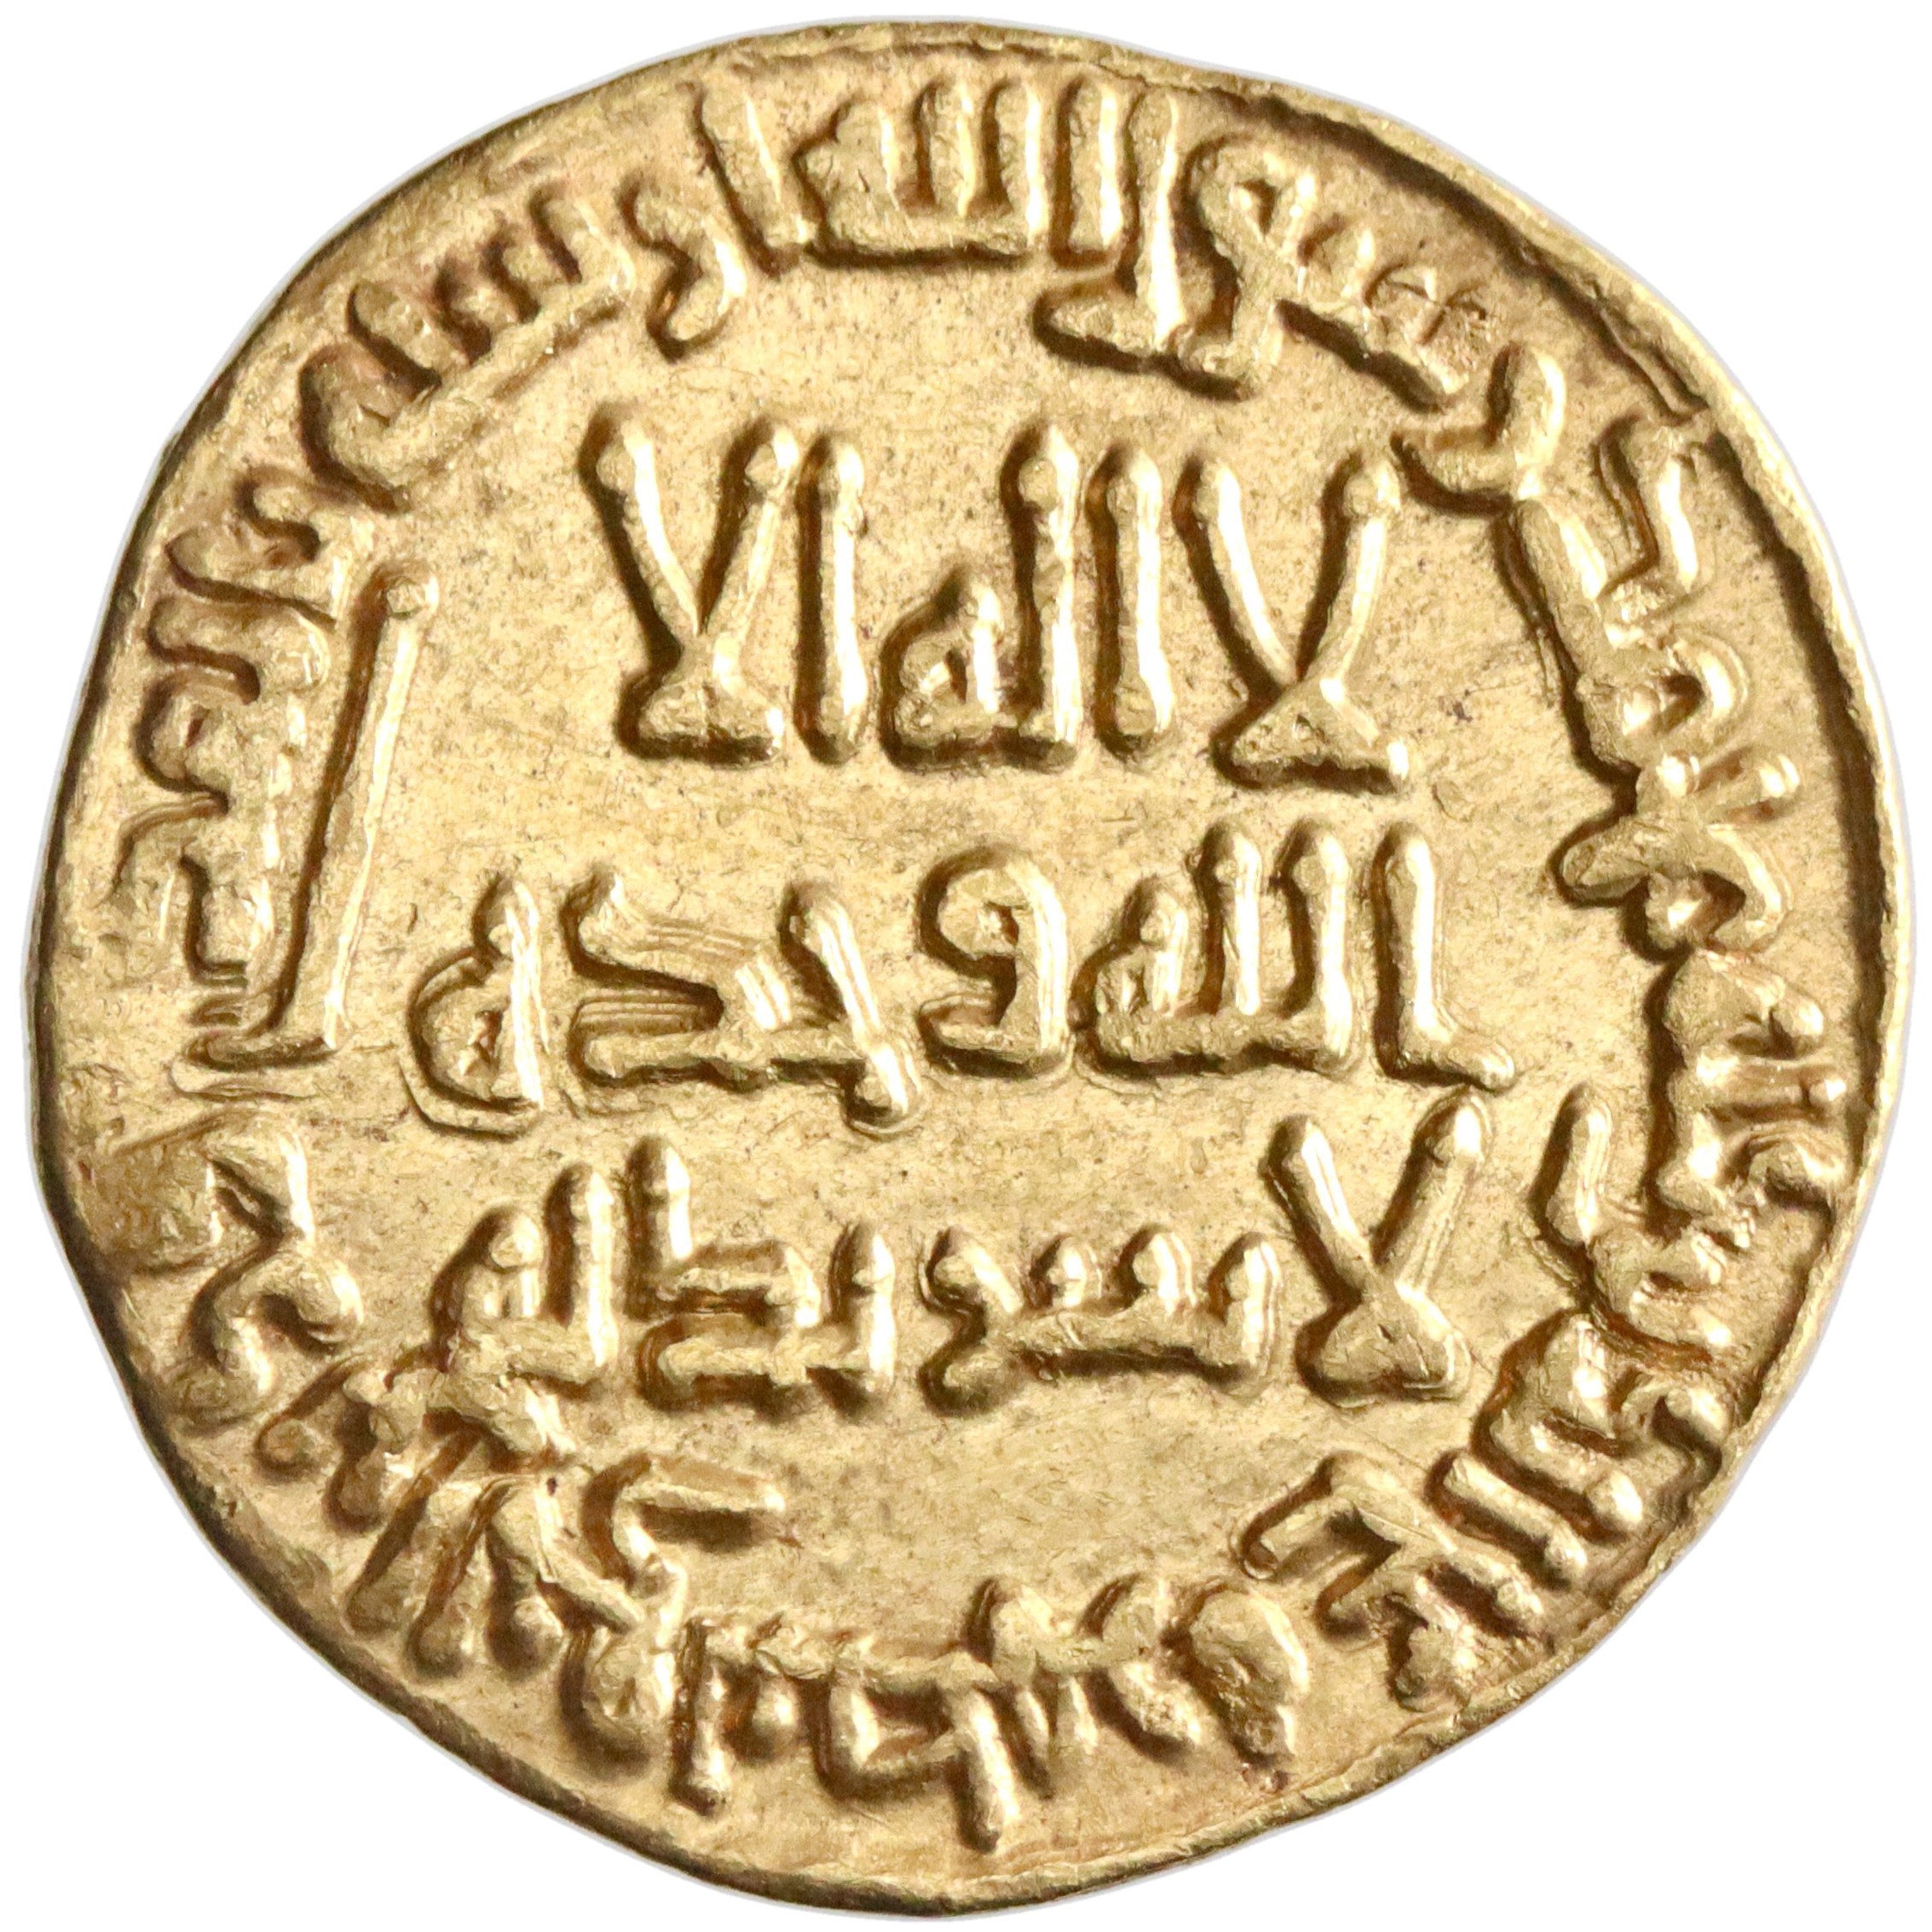 Umayyad, Marwan II, gold dinar, AH 128